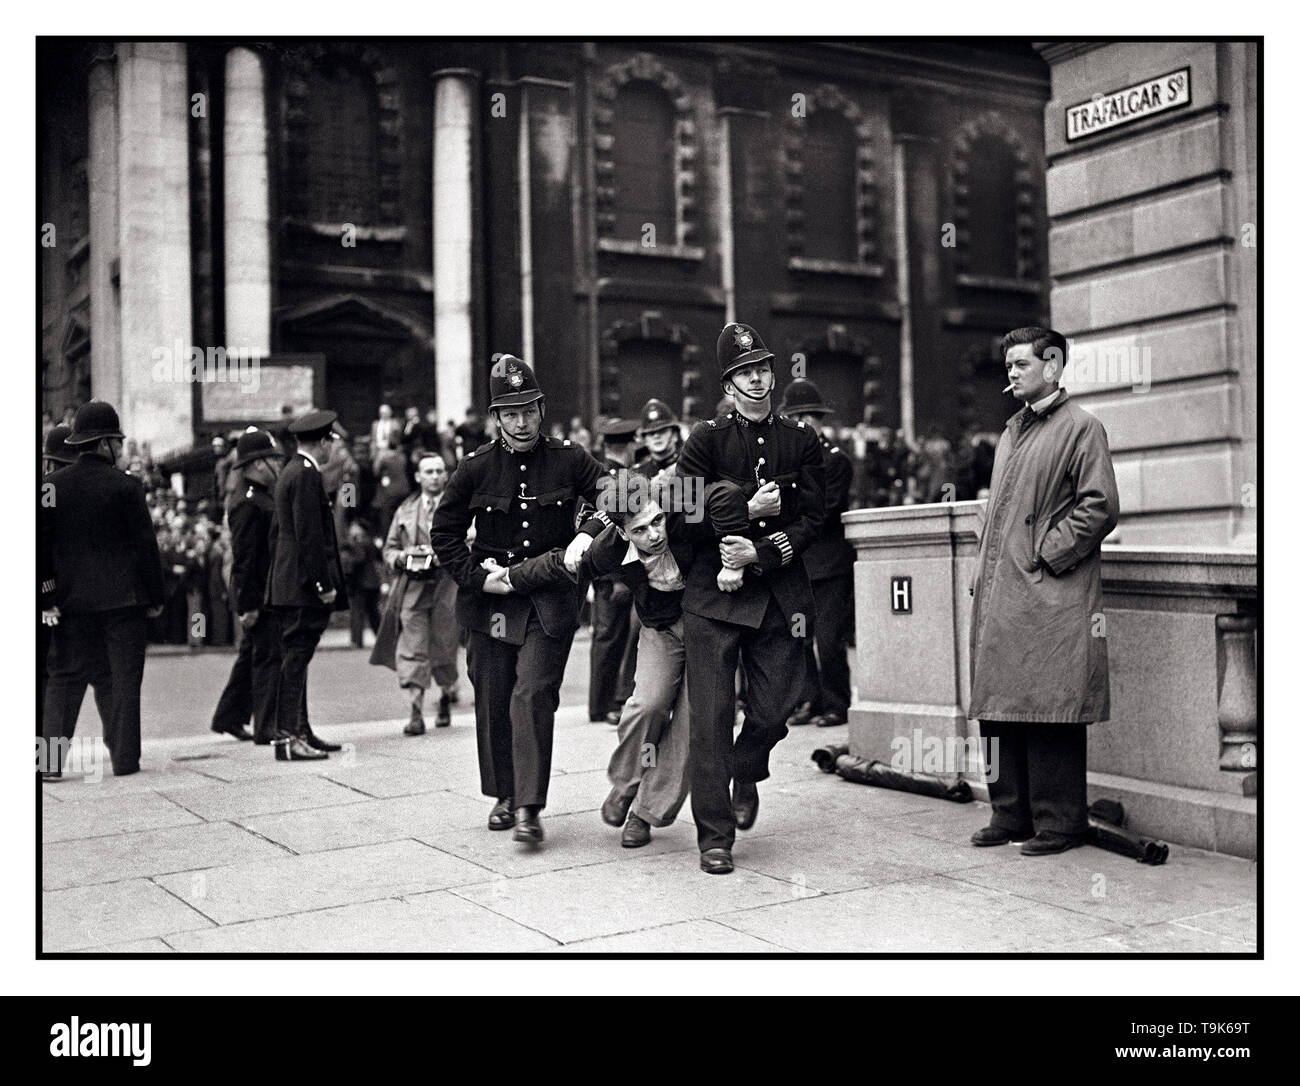 Vintage B&W news immagine del dimostratore lottando con la polizia come l'Unione Britannica dei Fascisti da Kentish Town, guidata da Sir Oswald Mosley parata e marzo a Londra durante le elezioni locali domenica 4 luglio, 1937 Trafalgar Square London REGNO UNITO Foto Stock